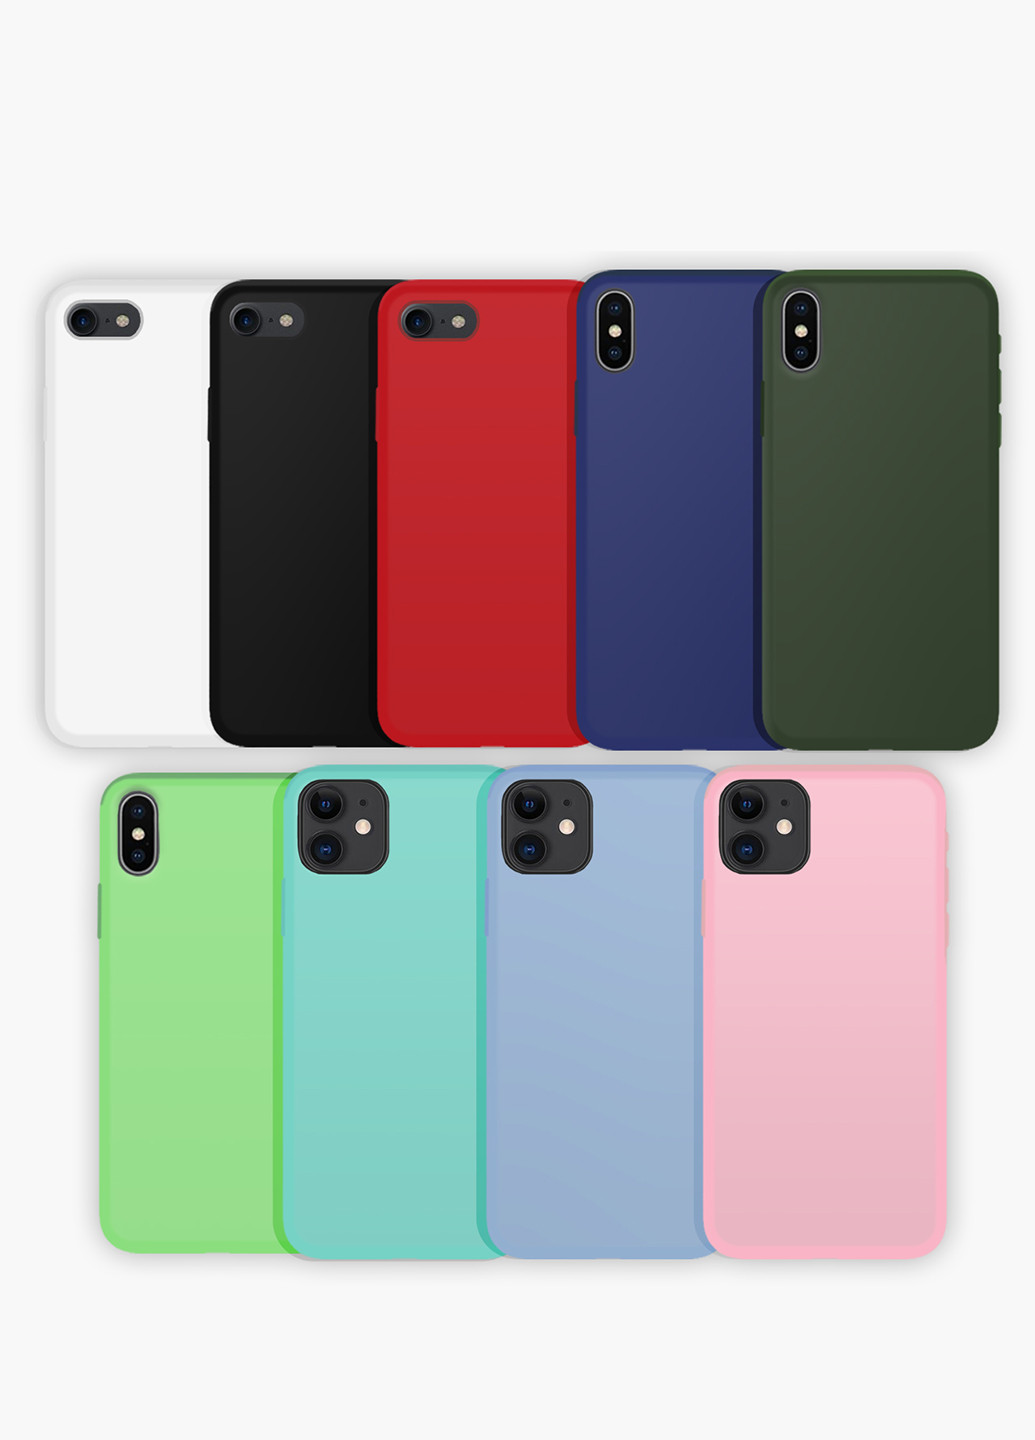 Чехол силиконовый Apple Iphone 11 Pro Max Лайк Лайка (Likee) (9232-1598) MobiPrint (219536775)